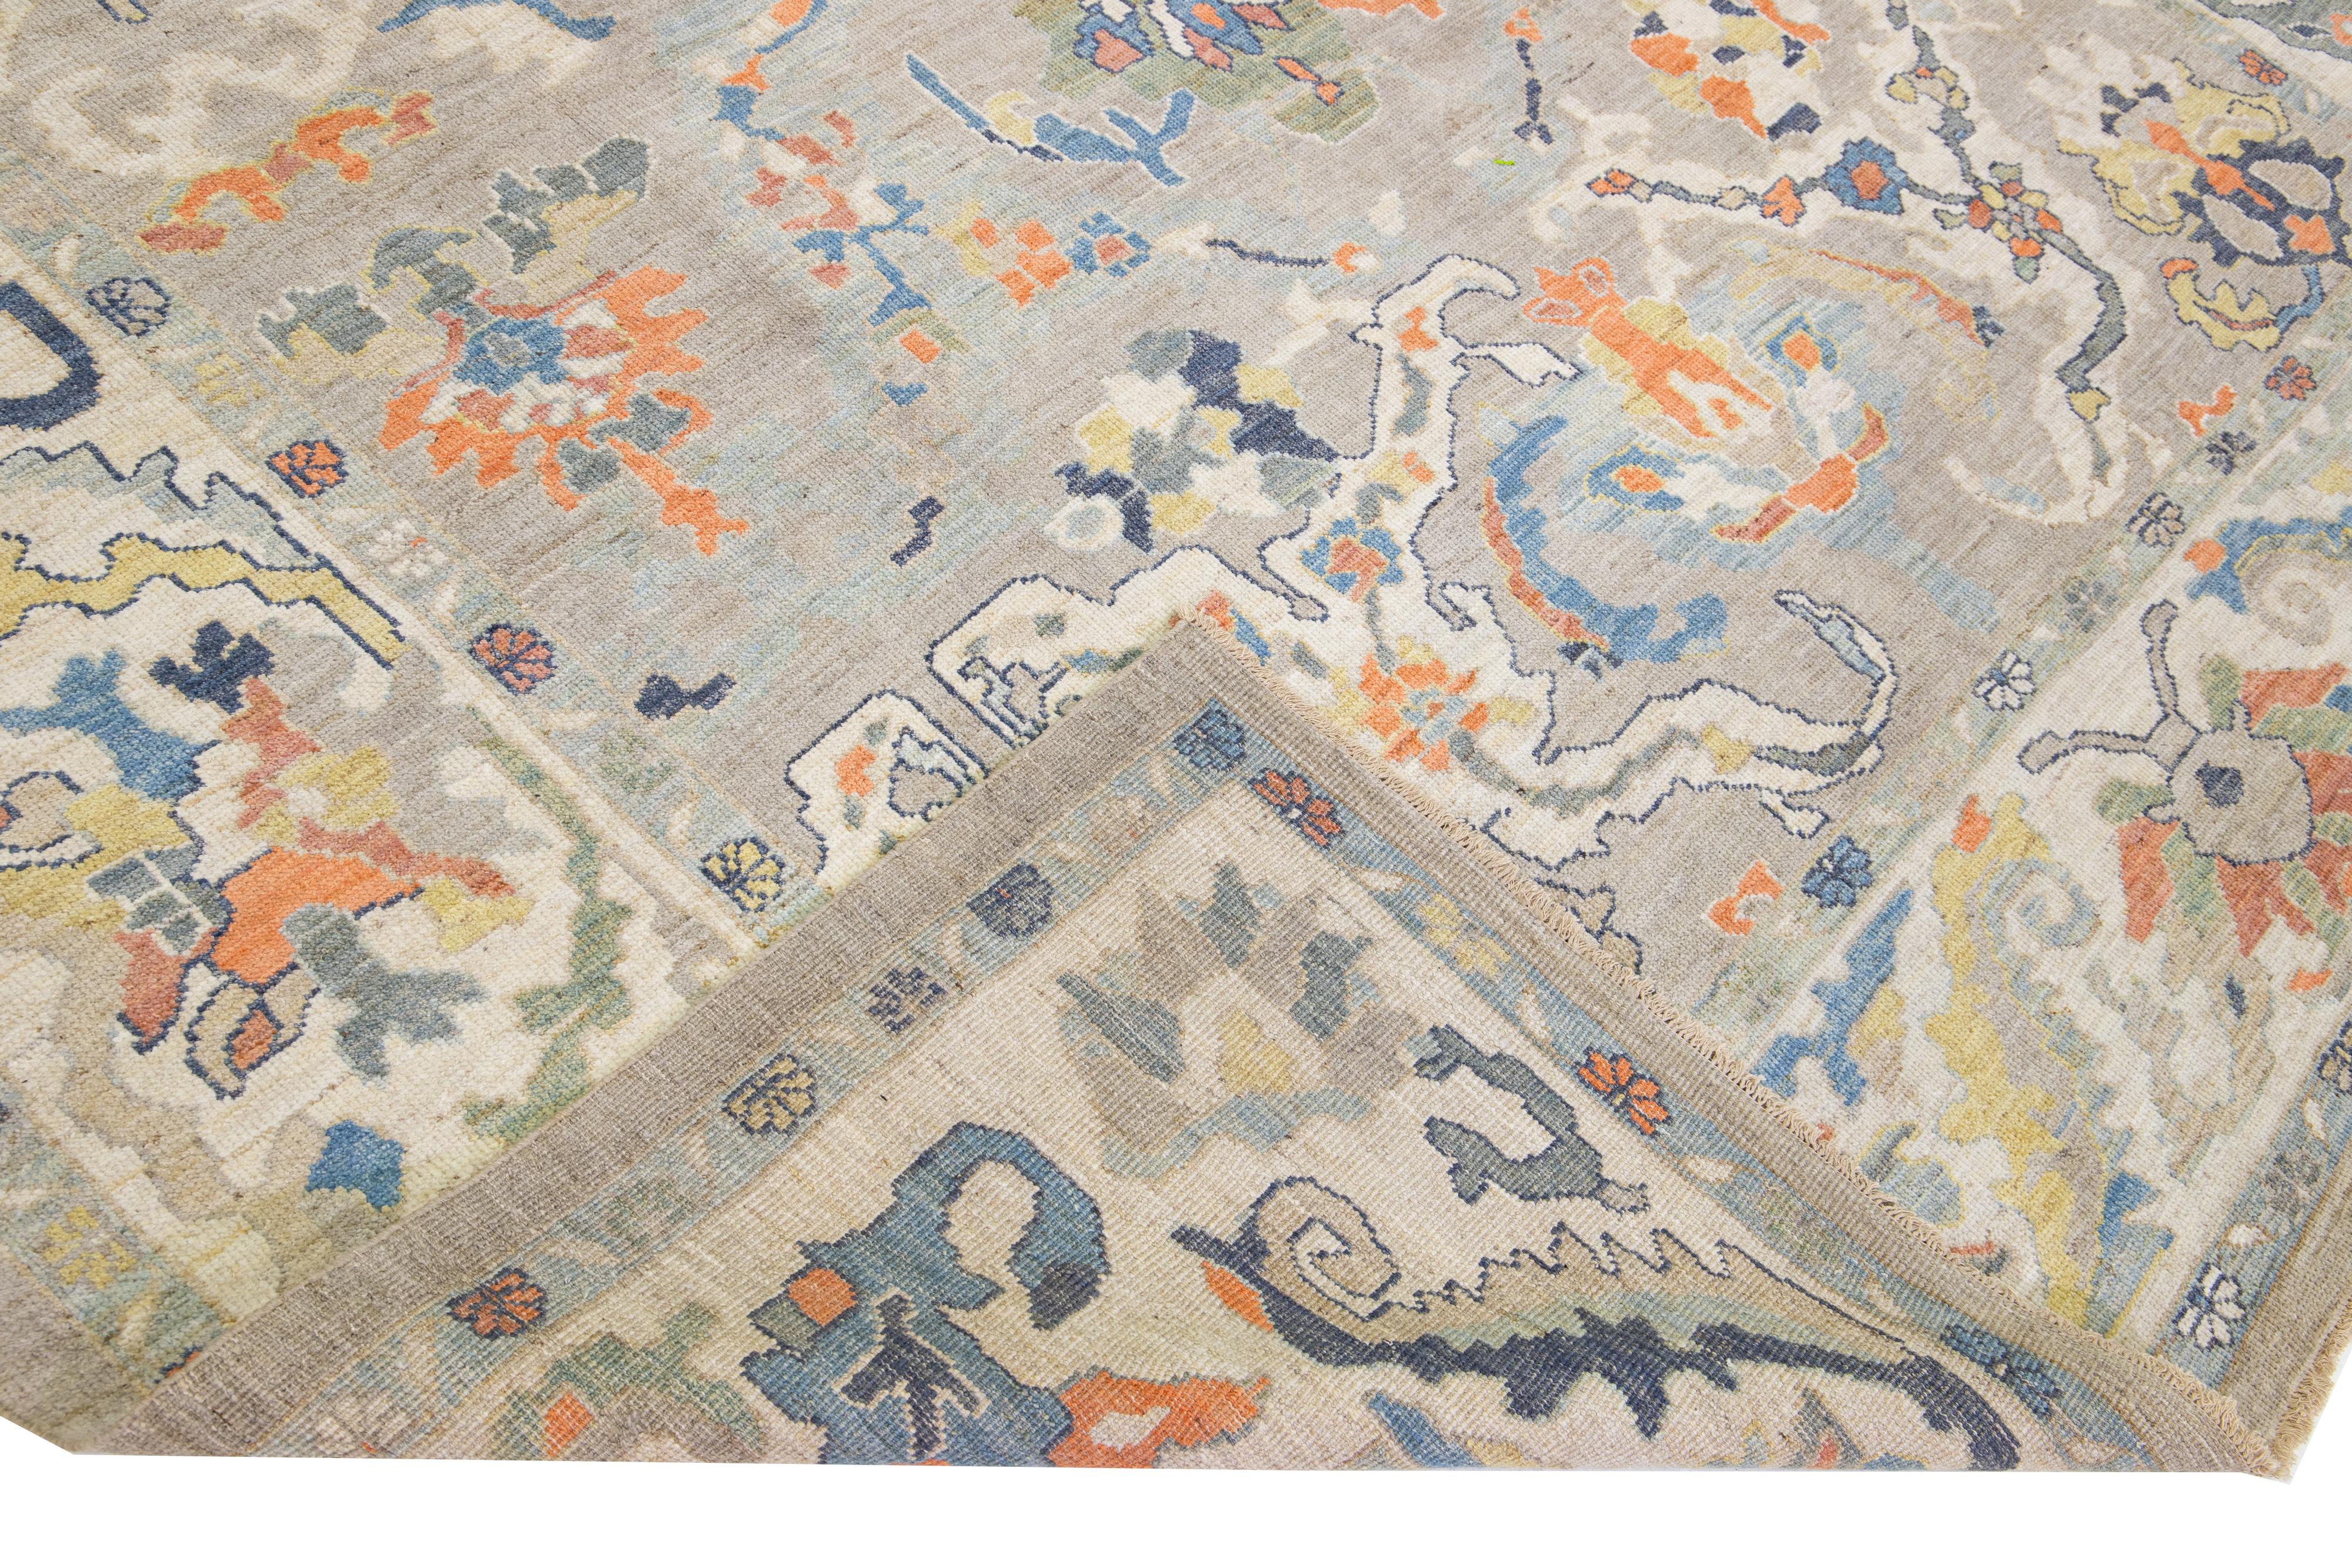 Schöner moderner Sultanabad Teppich aus handgeknüpfter Wolle mit grauem Farbfeld. Dieser Teppich hat einen beigen Rahmen mit orangefarbenen, gelben und blauen Akzenten in einem wunderschönen floralen Allover-Muster.

Dieser Teppich misst: 10'2